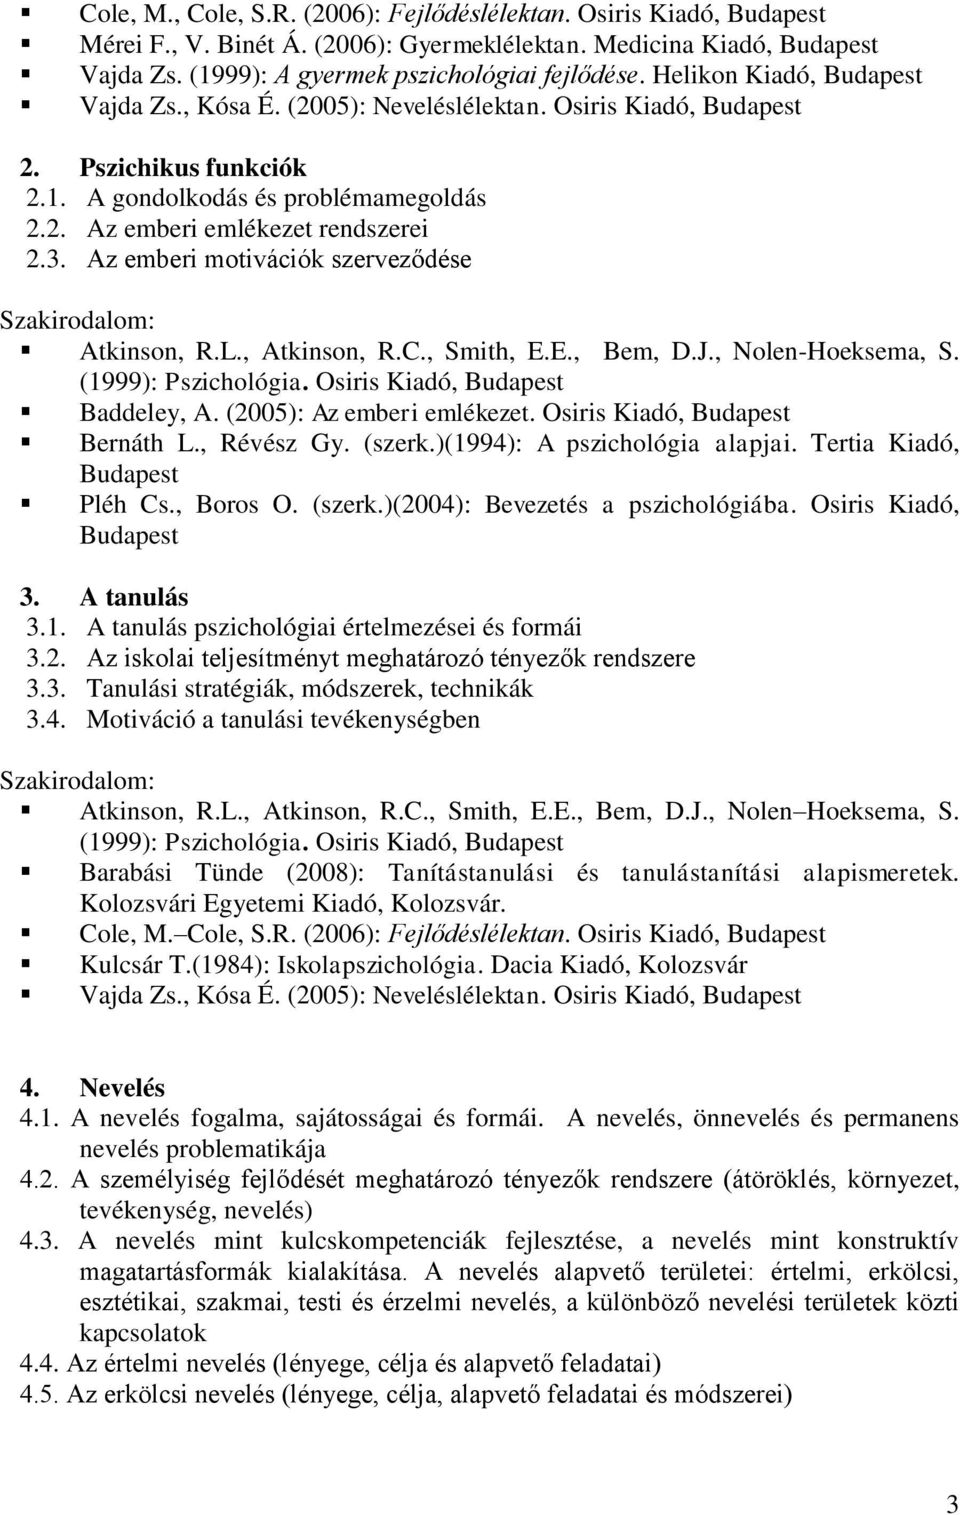 Az emberi motivációk szerveződése Atkinson, R.L., Atkinson, R.C., Smith, E.E., Bem, D.J., Nolen-Hoeksema, S. (1999): Pszichológia. Osiris Kiadó, Budapest Baddeley, A. (2005): Az emberi emlékezet.